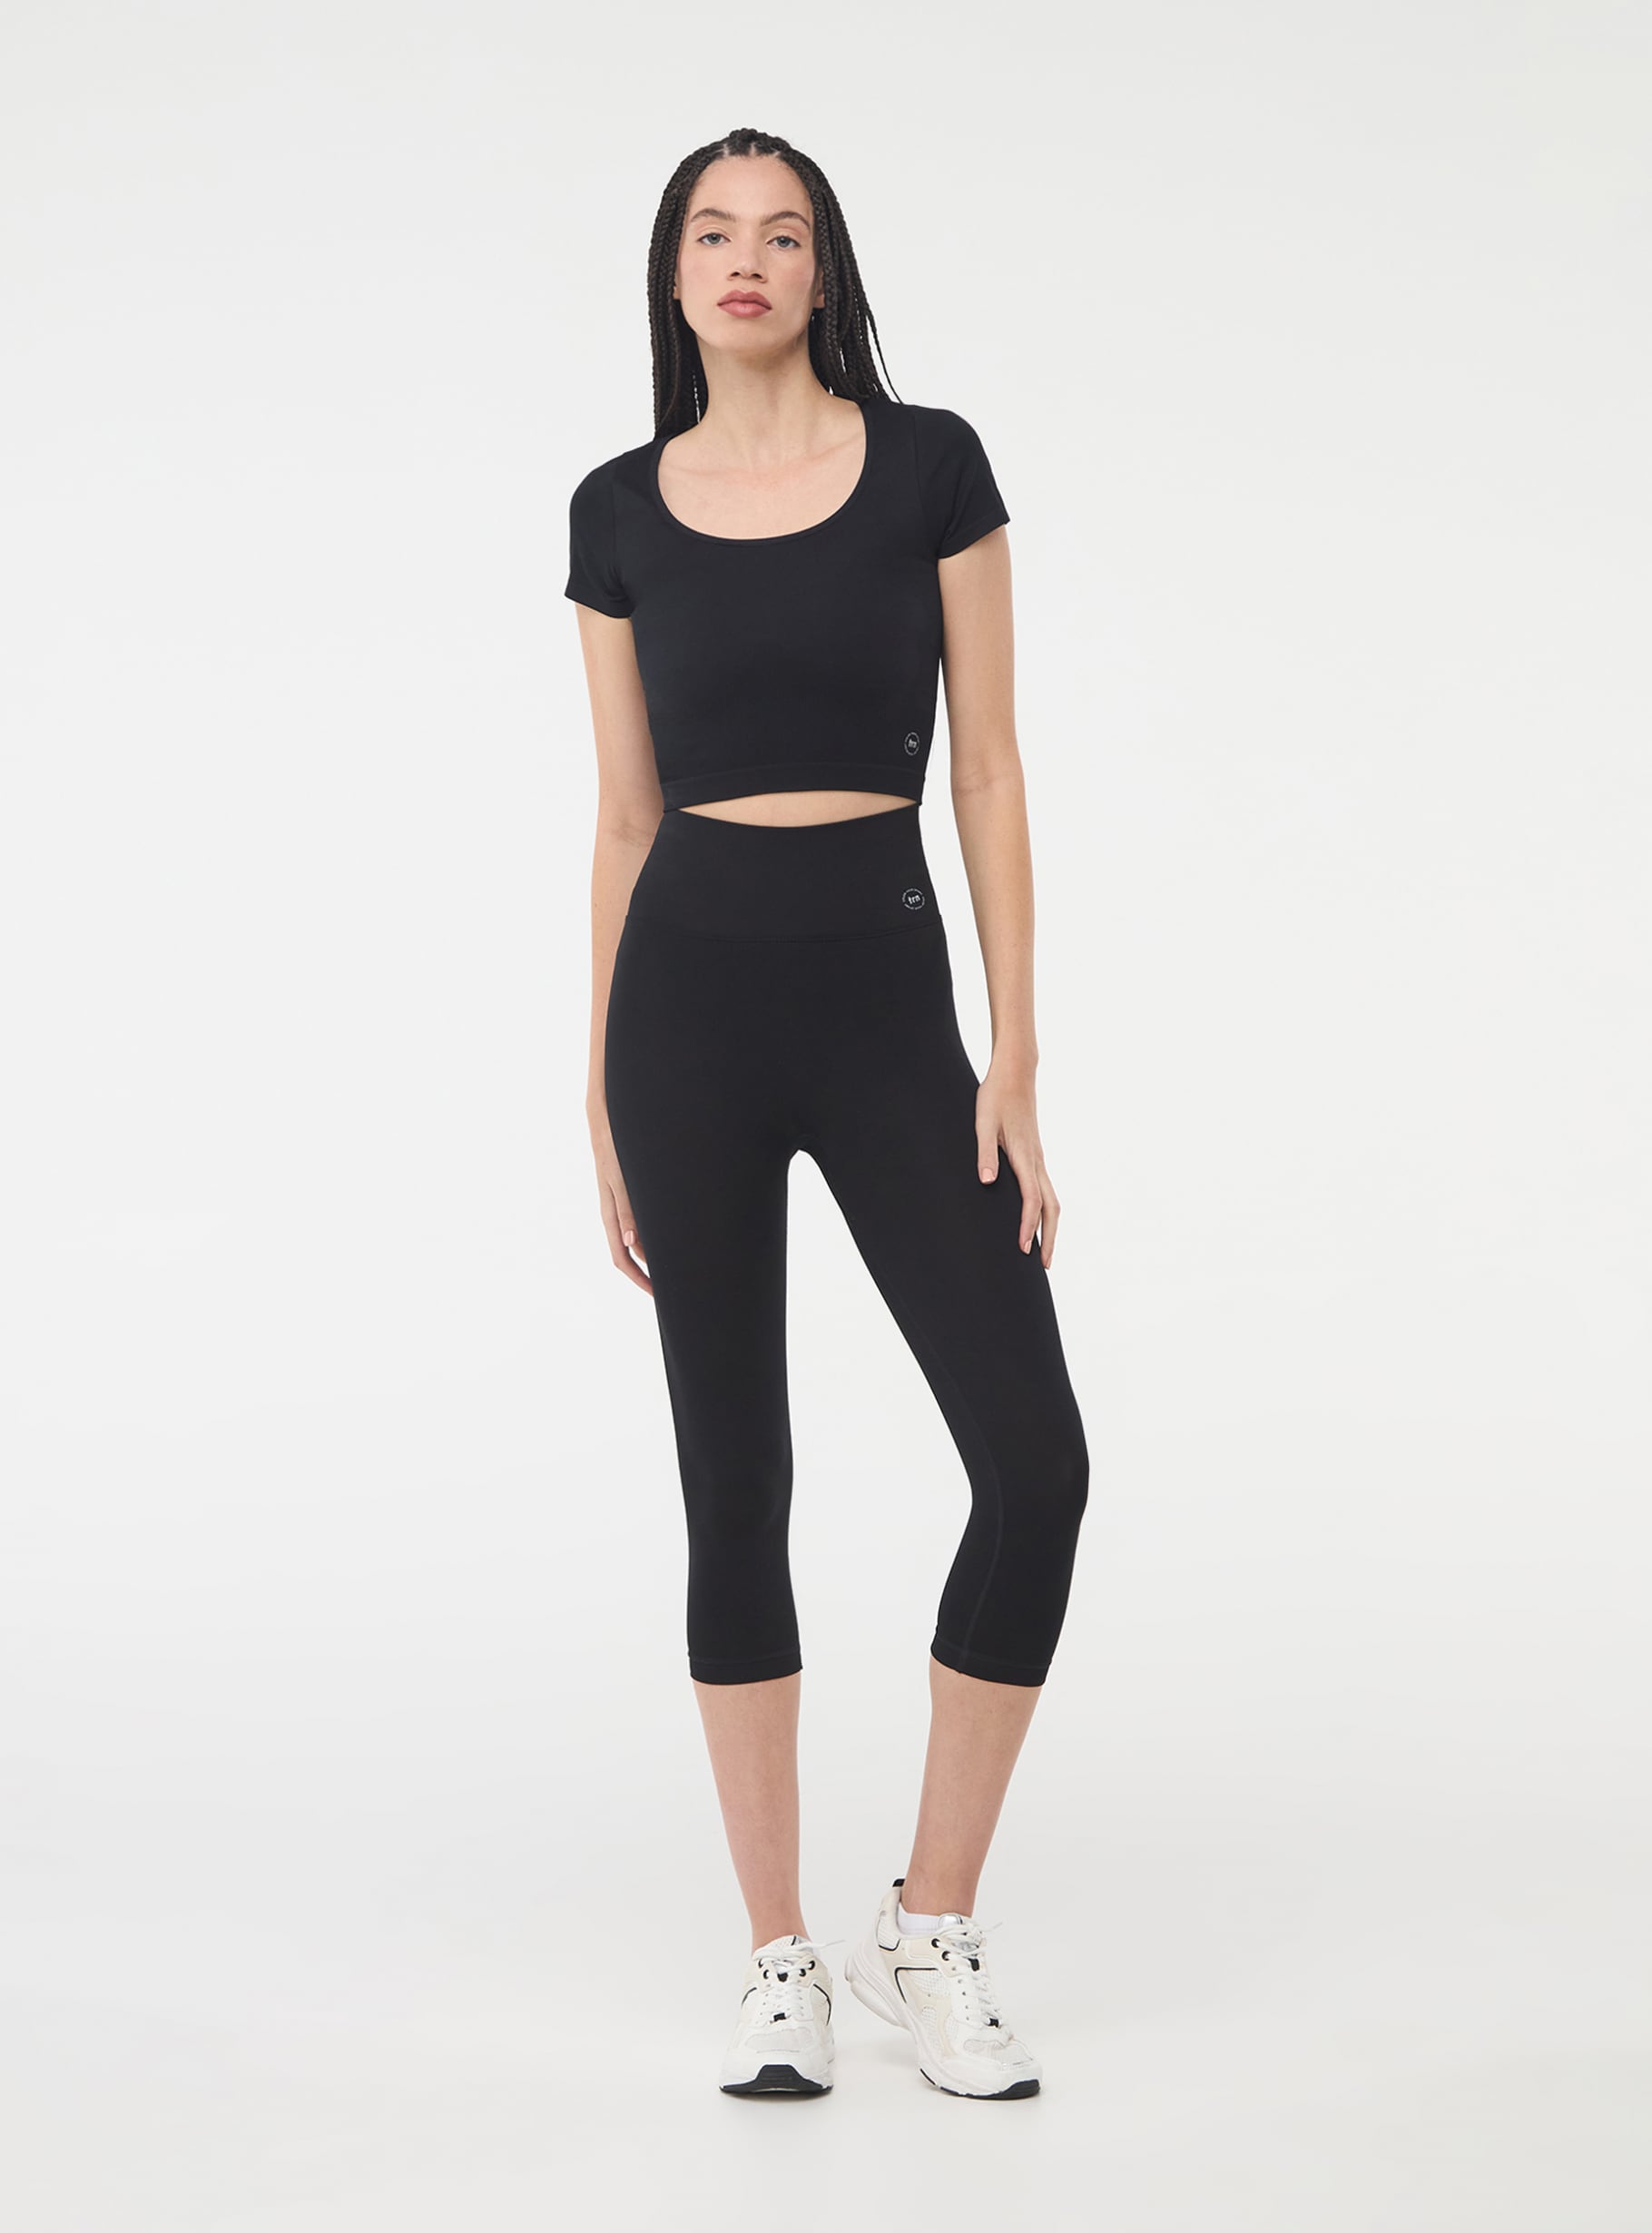 Black Seamless plain leggings - Buy Online